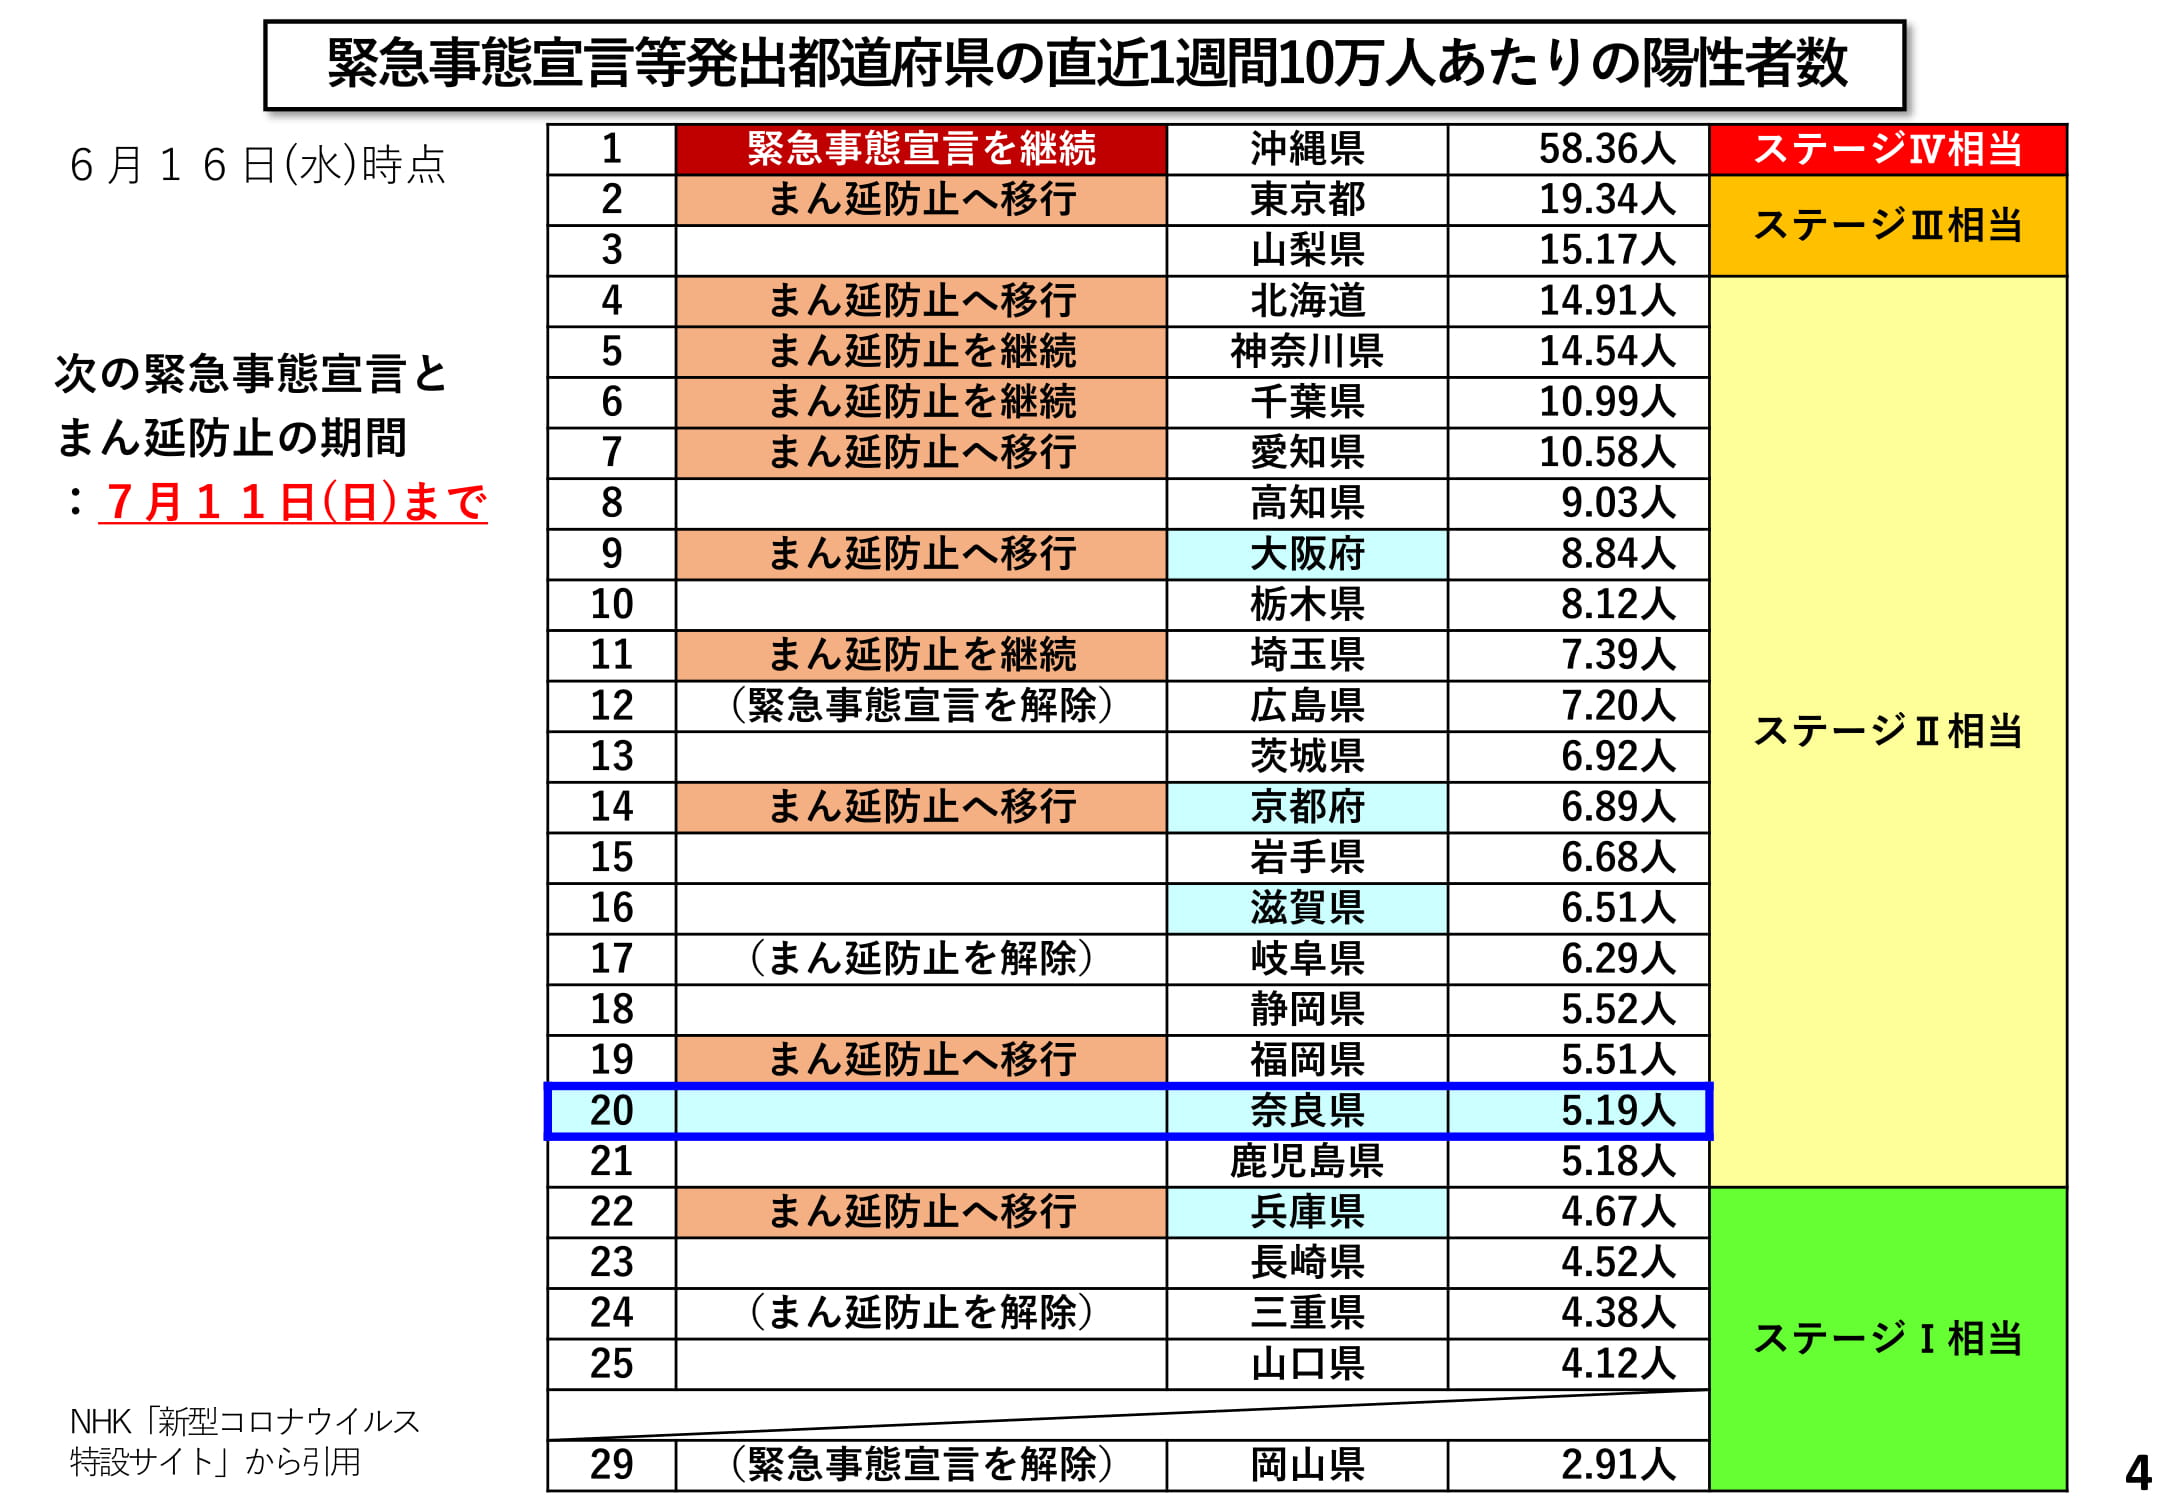 緊急事態宣言等発出都道府県の直近1週間10万人あたりの陽性者数